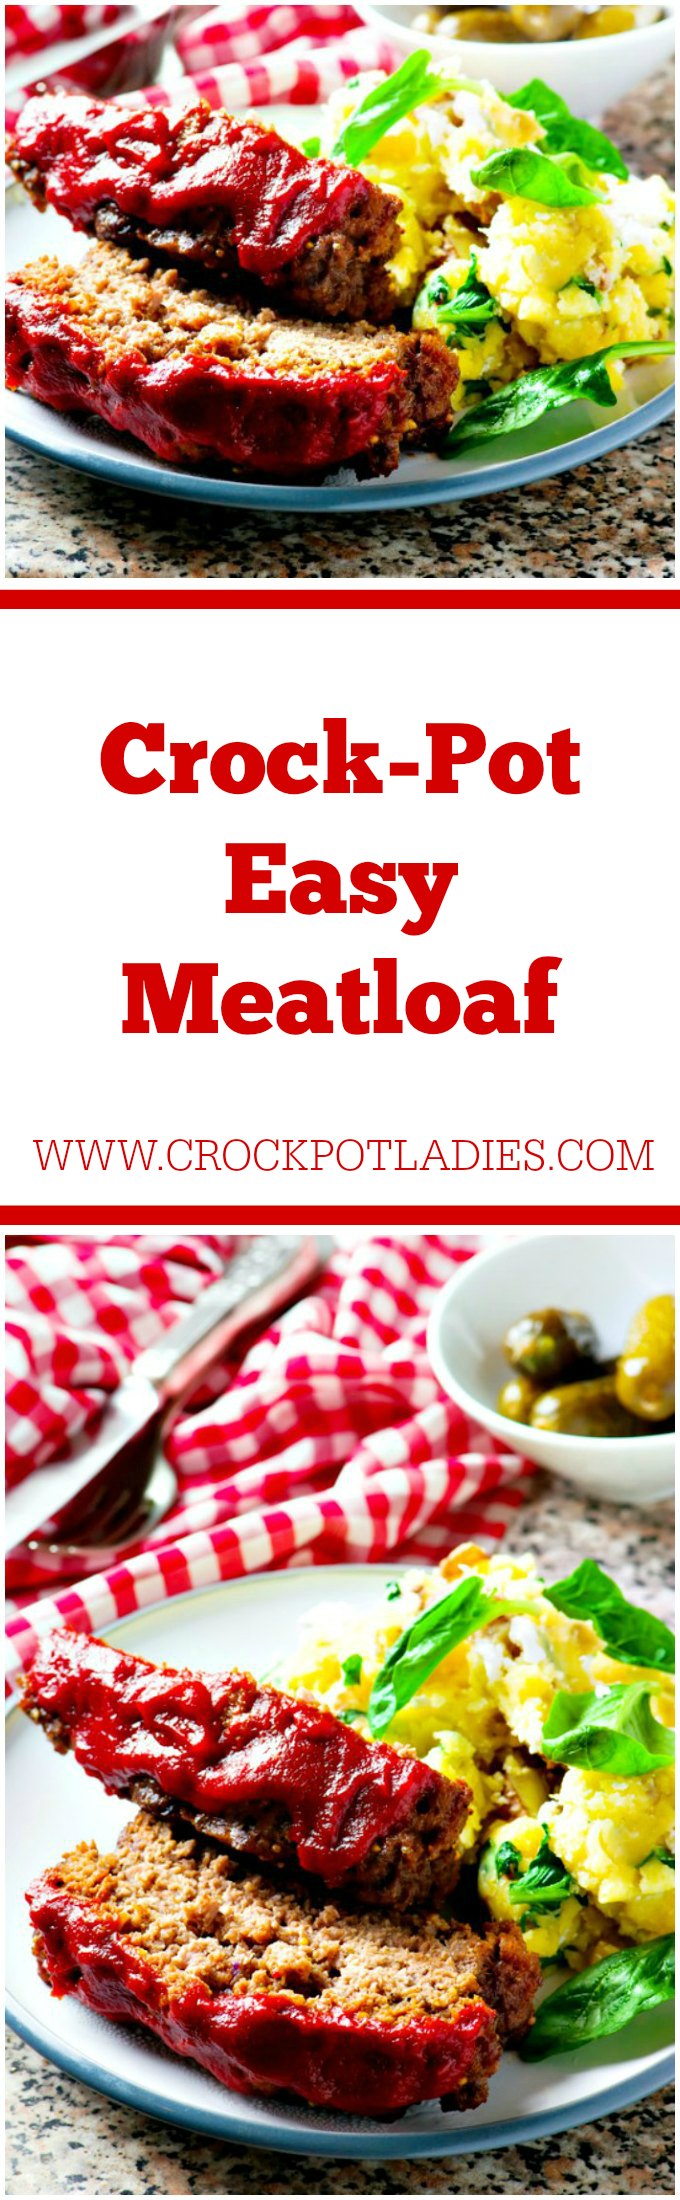 Crock-Pot Easy Meatloaf